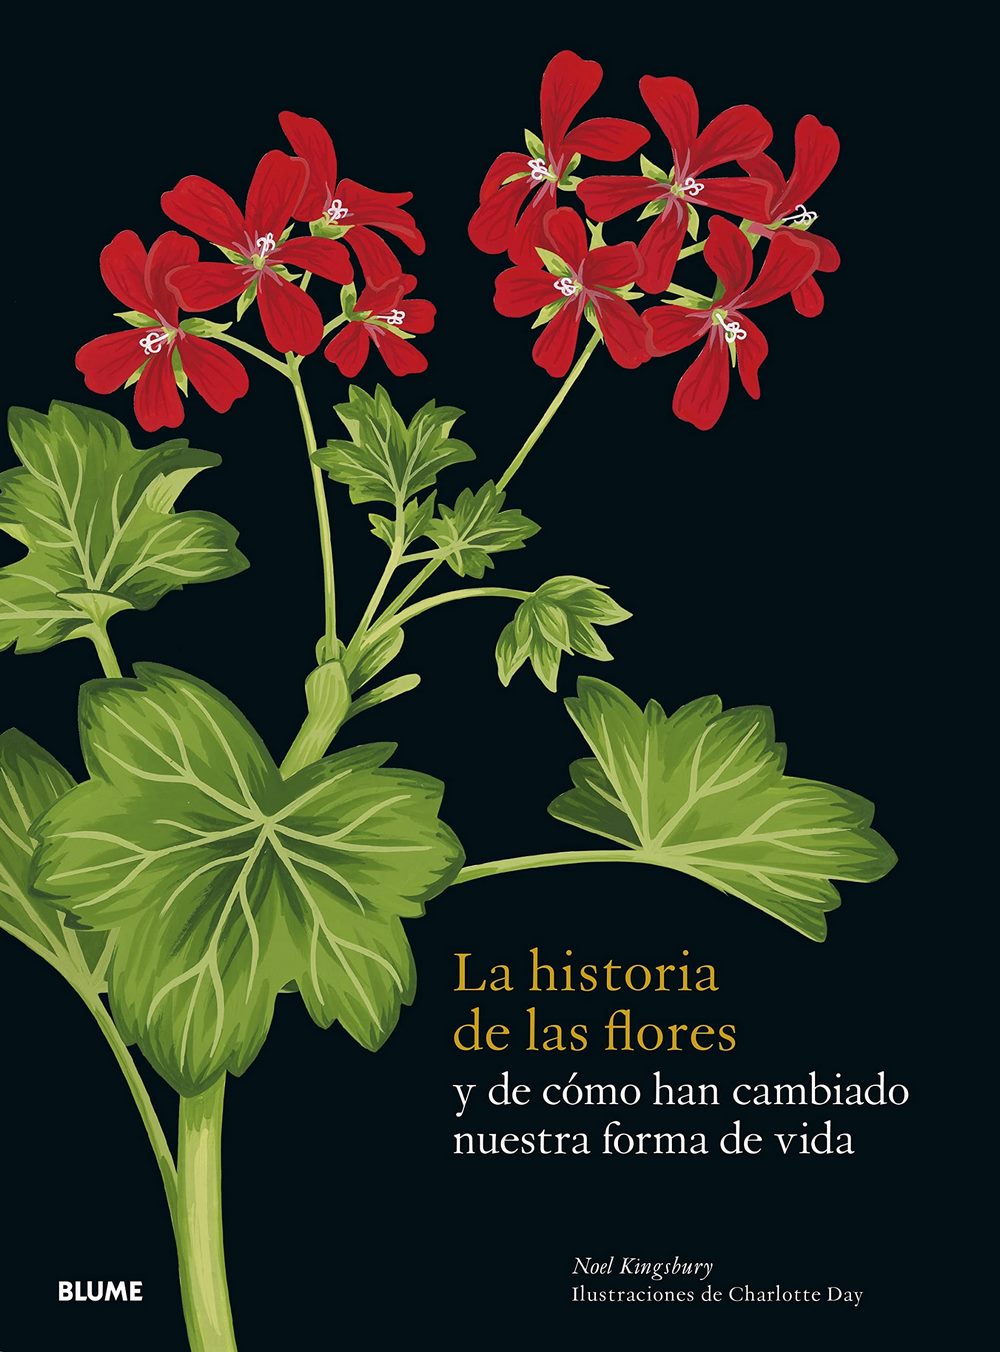 Portadad de La historia de las flores, libro de Noel Kingsbury